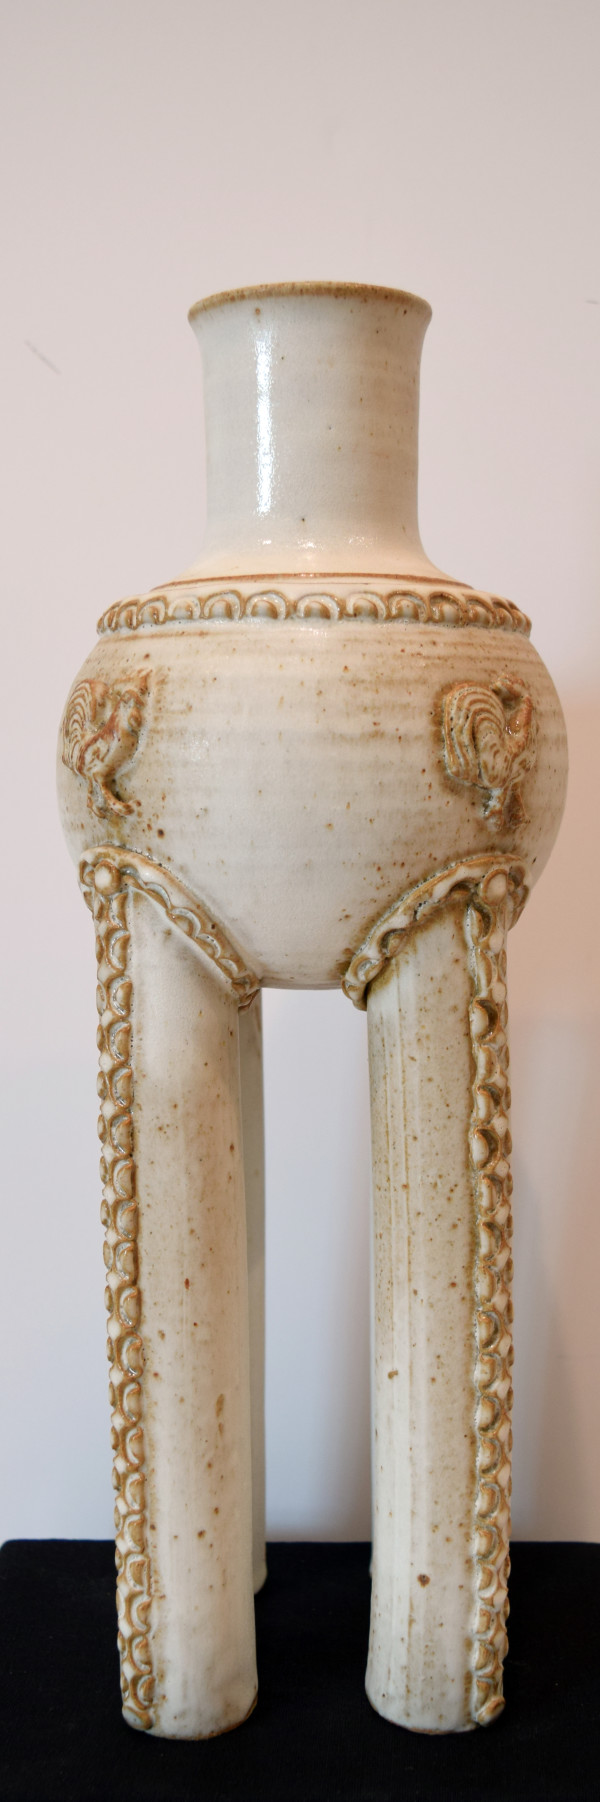 Rooster Vase by Dorothy Pulsifer